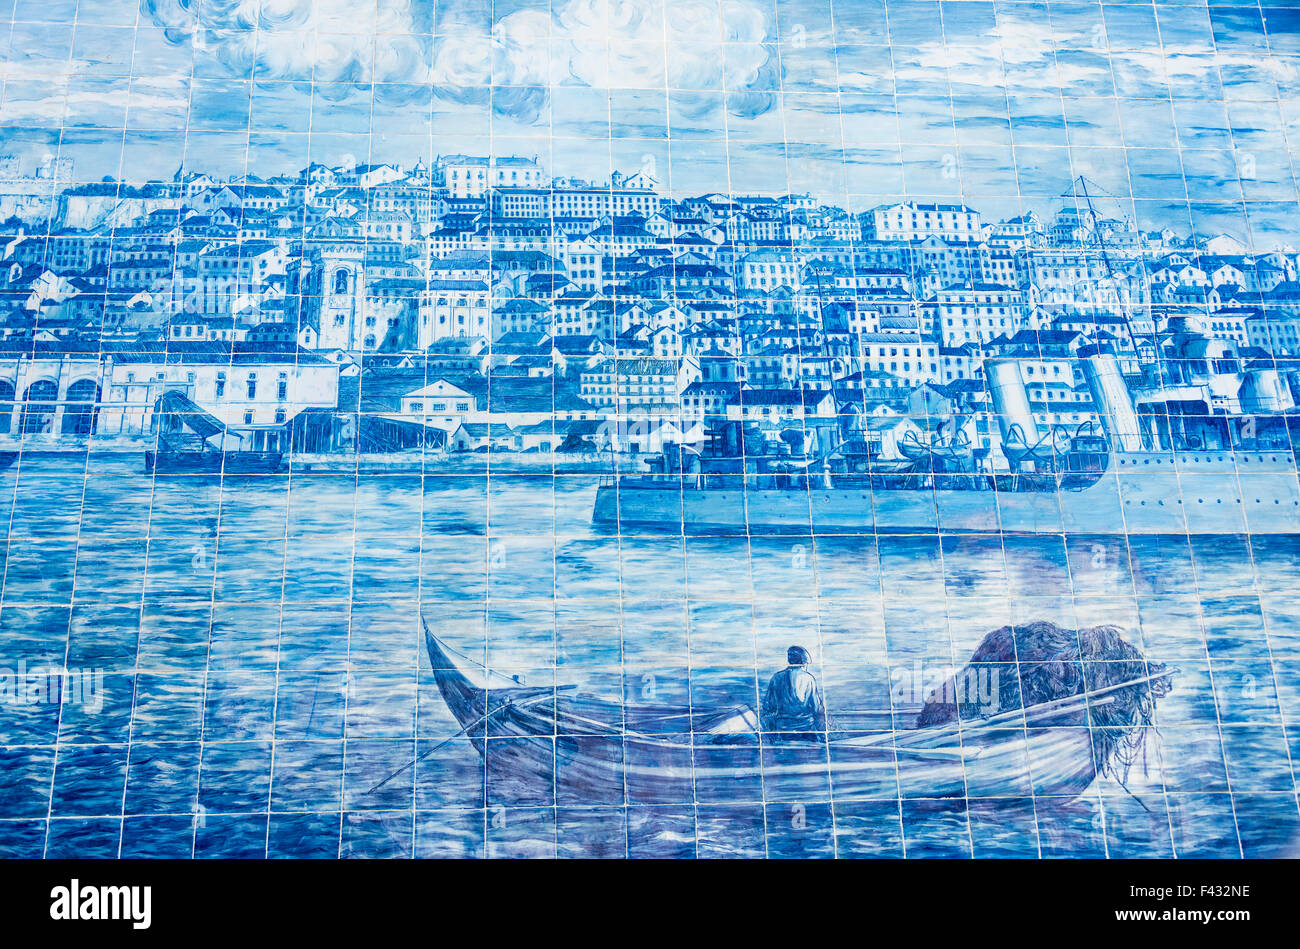 Carreaux de céramique en azulejo sur vieille maison à Lisbonne, Portugal. Banque D'Images